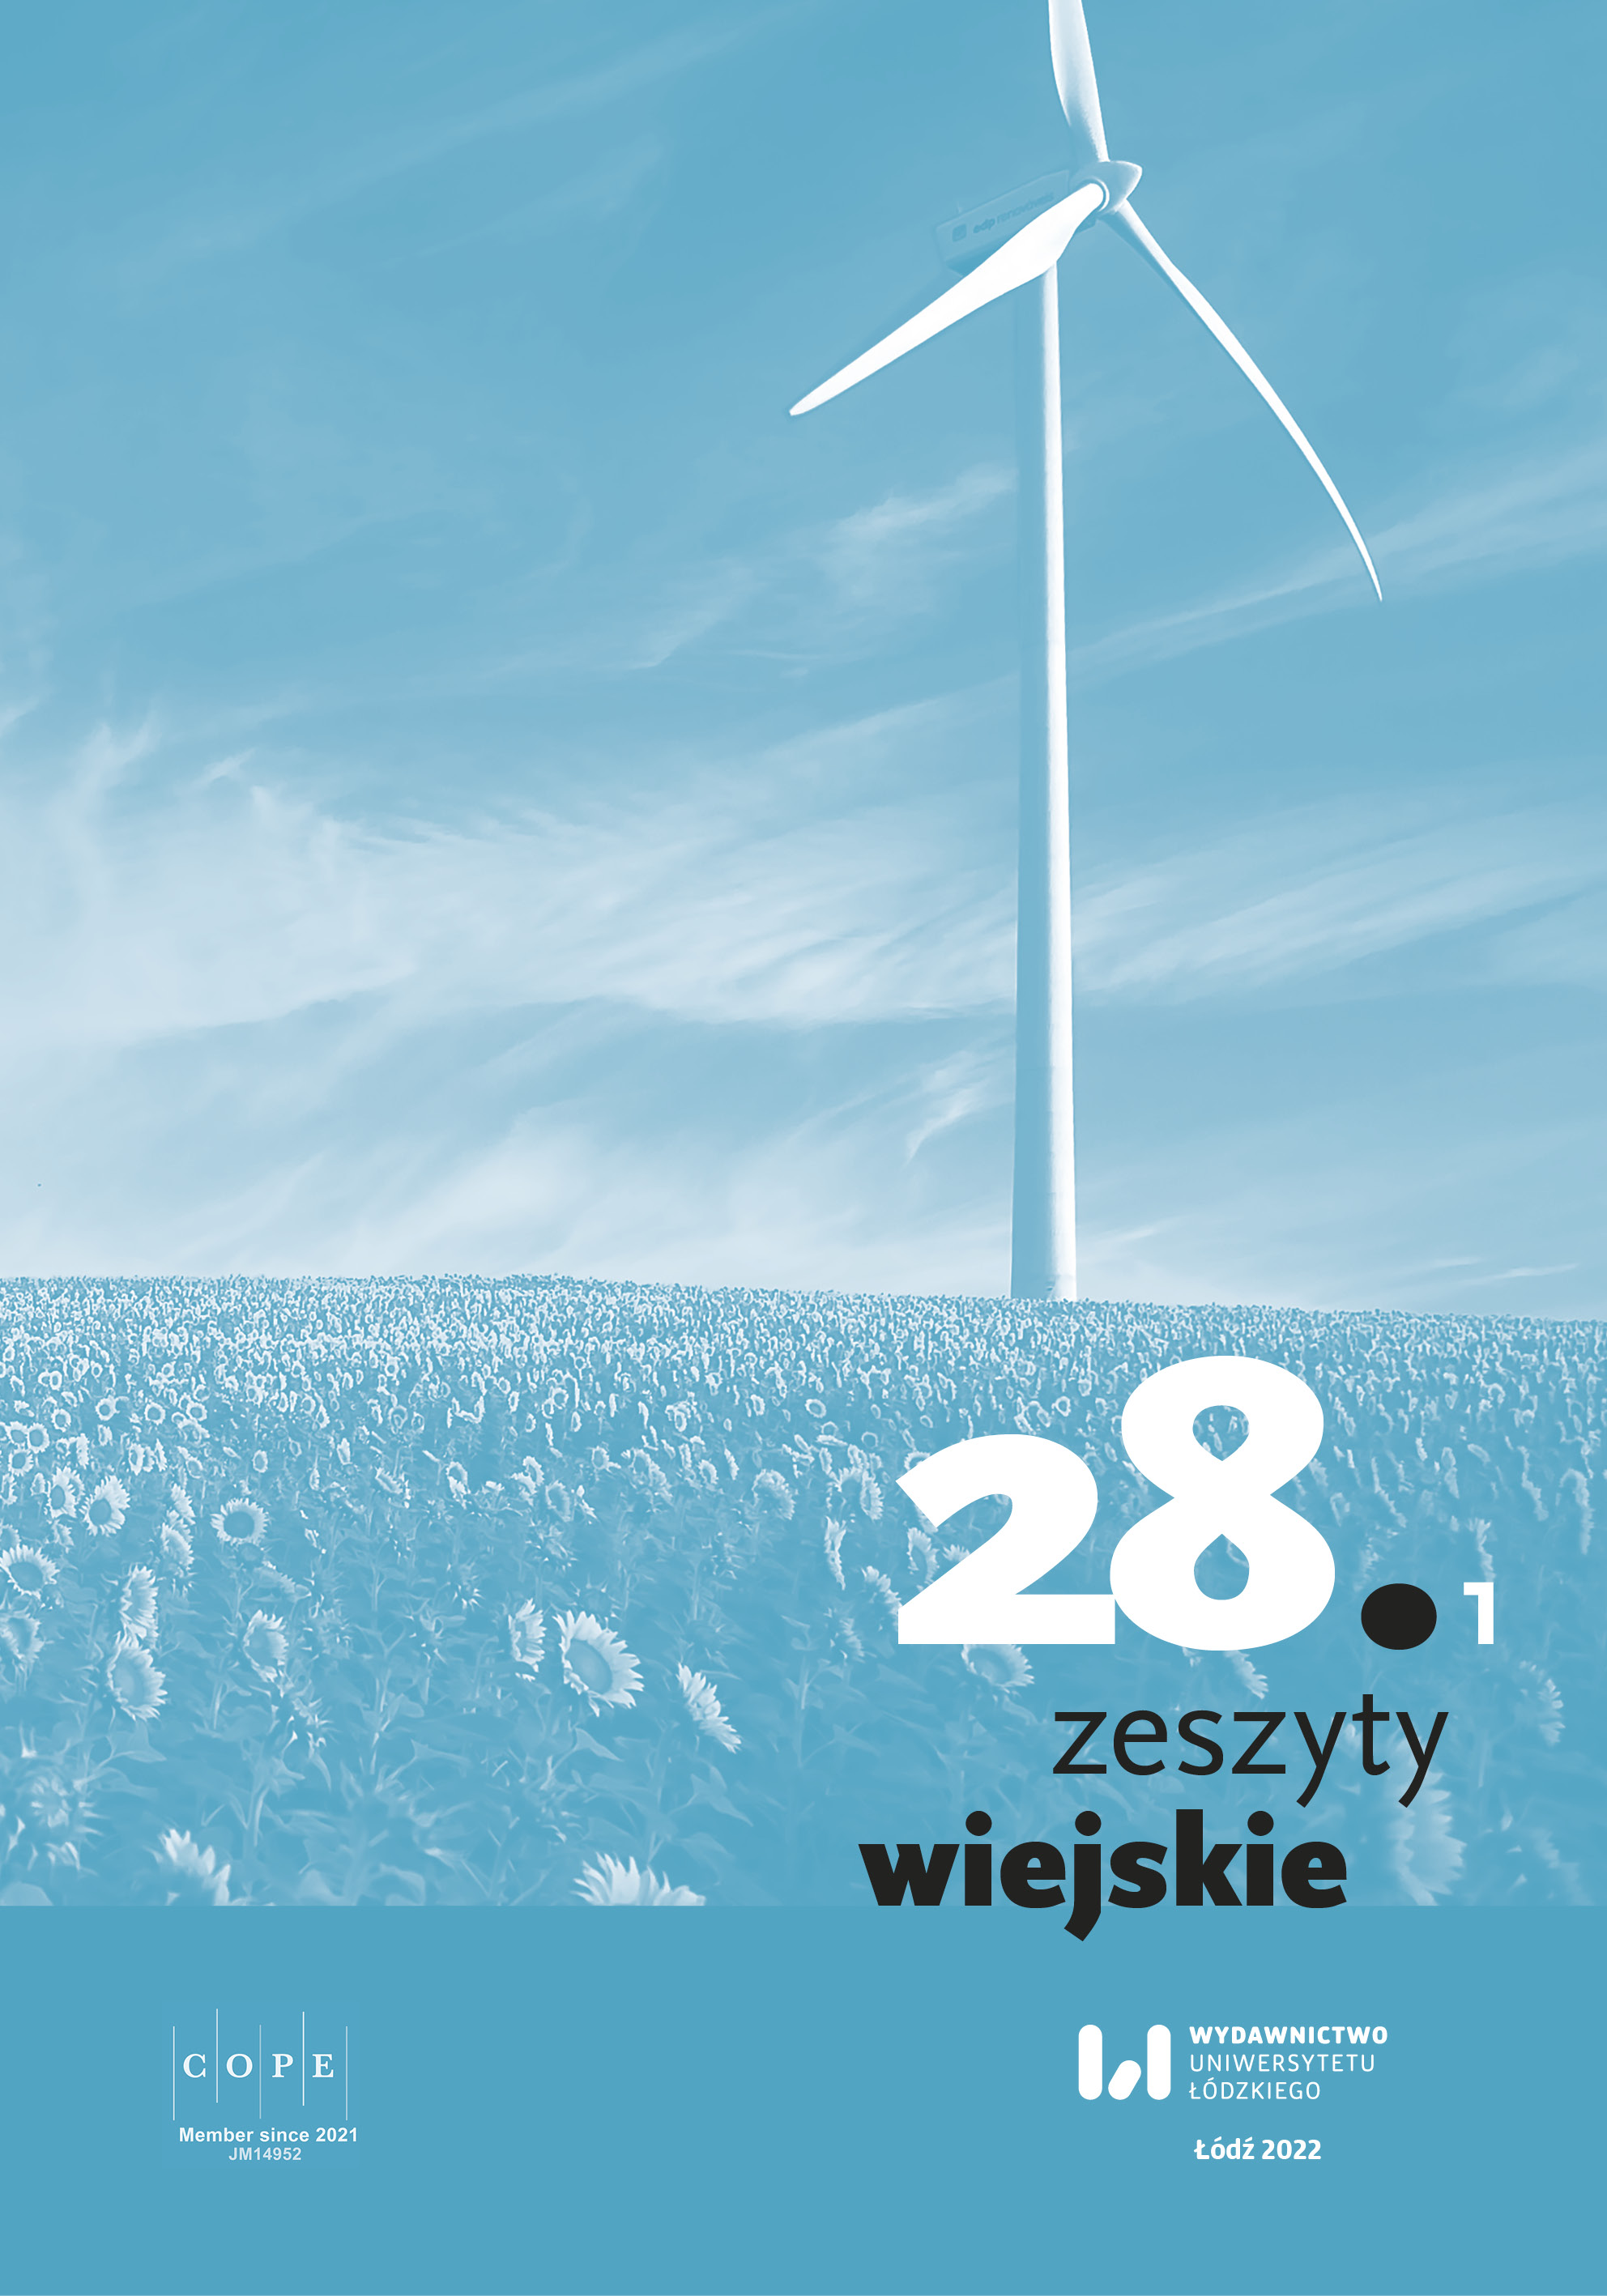 World somewhere else? Magazine “Kultura Wsi. Ludzie. Wydarzenia. Przemiany” in 2014–2016 Cover Image